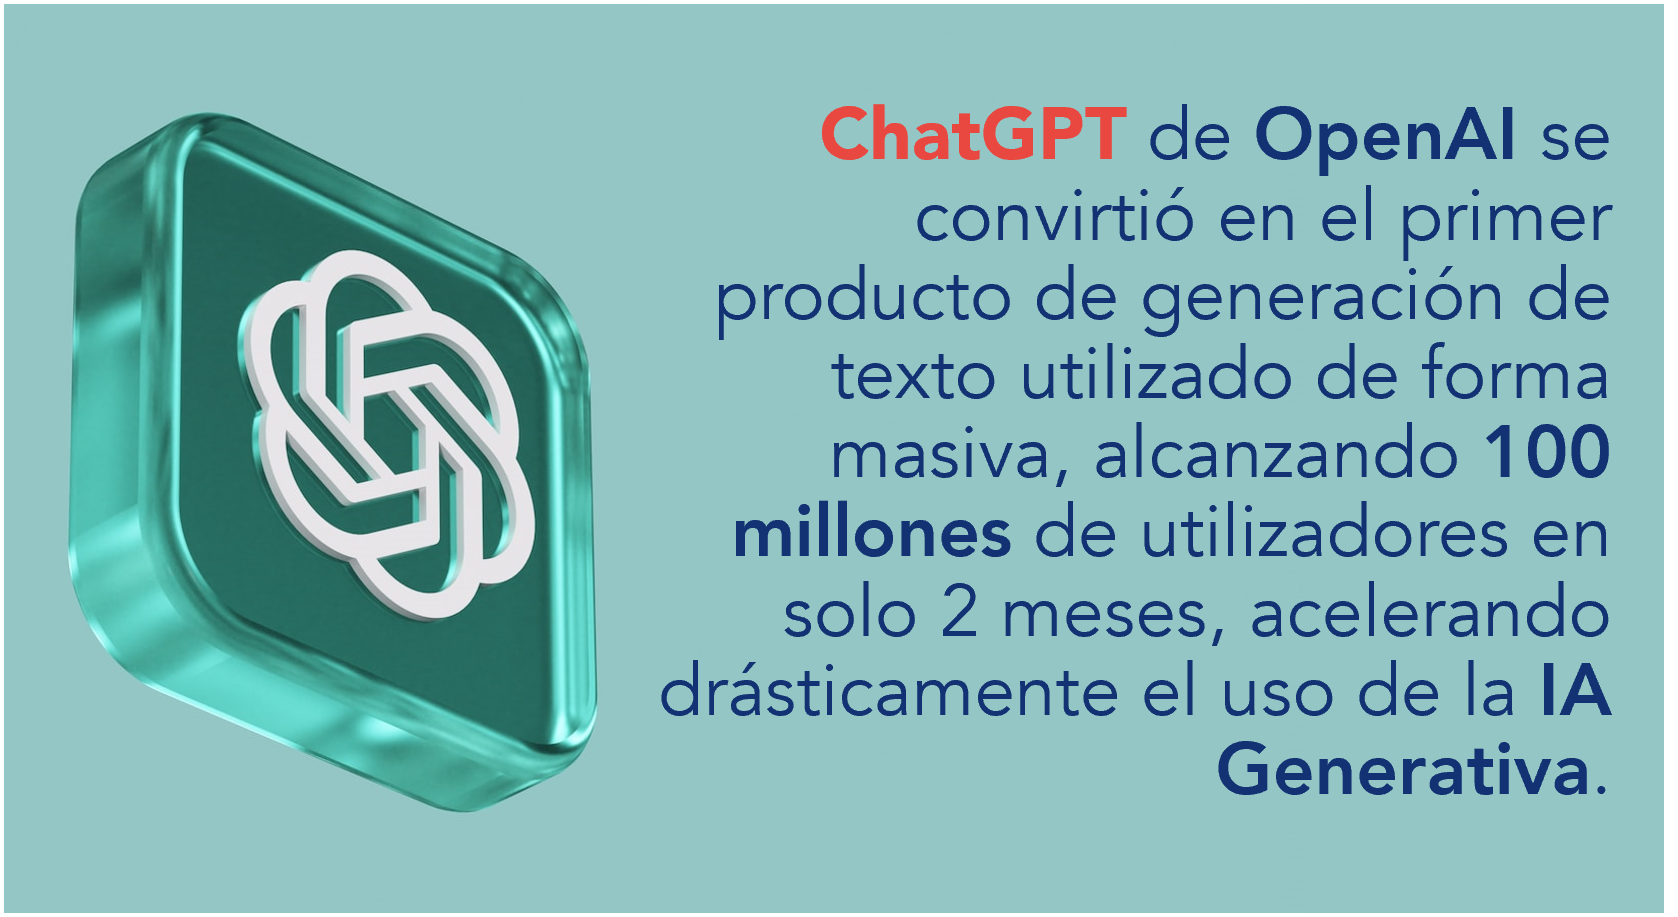 ChatGPT de OpenAI se convirtió en el primer producto de generación de texto utilizado de forma masiva, alcanzando 100 millones de utilizadores en solo 2 meses, acelerando drásticamente el uso de la IA Generativa.